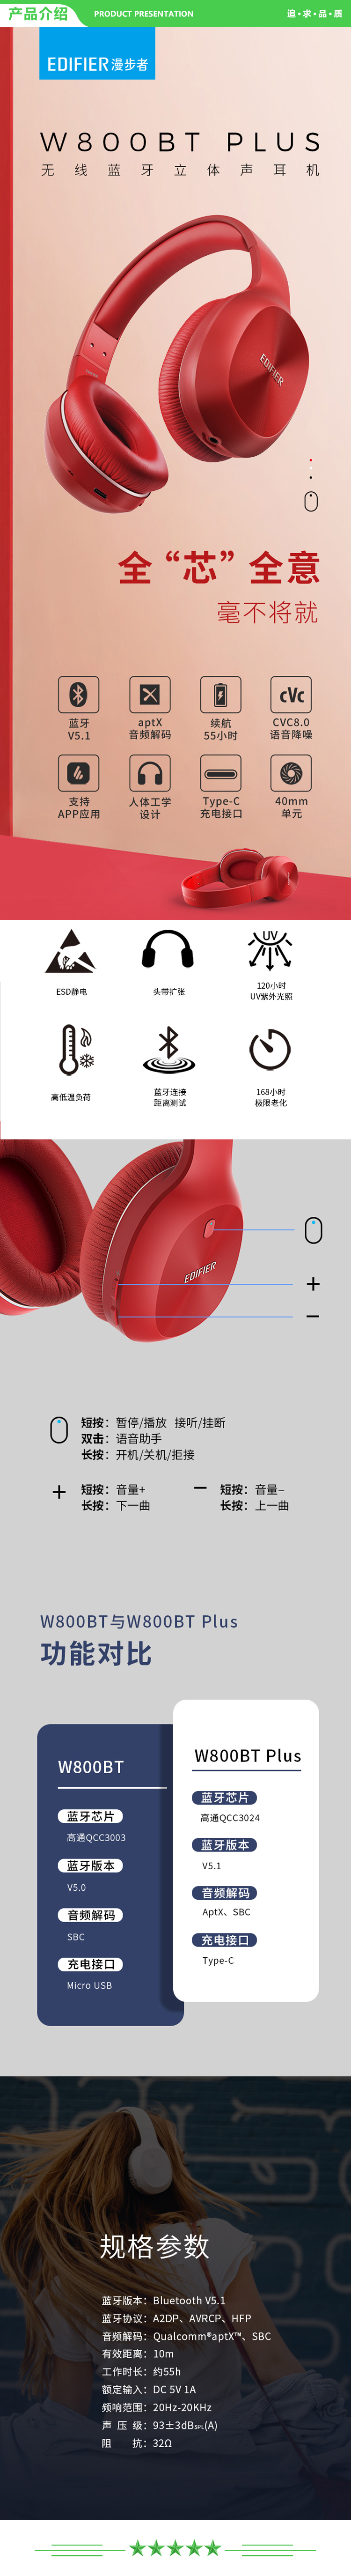 漫步者 EDIFIER W800BT Plus 头戴式立体声蓝牙耳机 音乐耳机 手机耳机 通用苹果华为小米手机 白色 .jpg